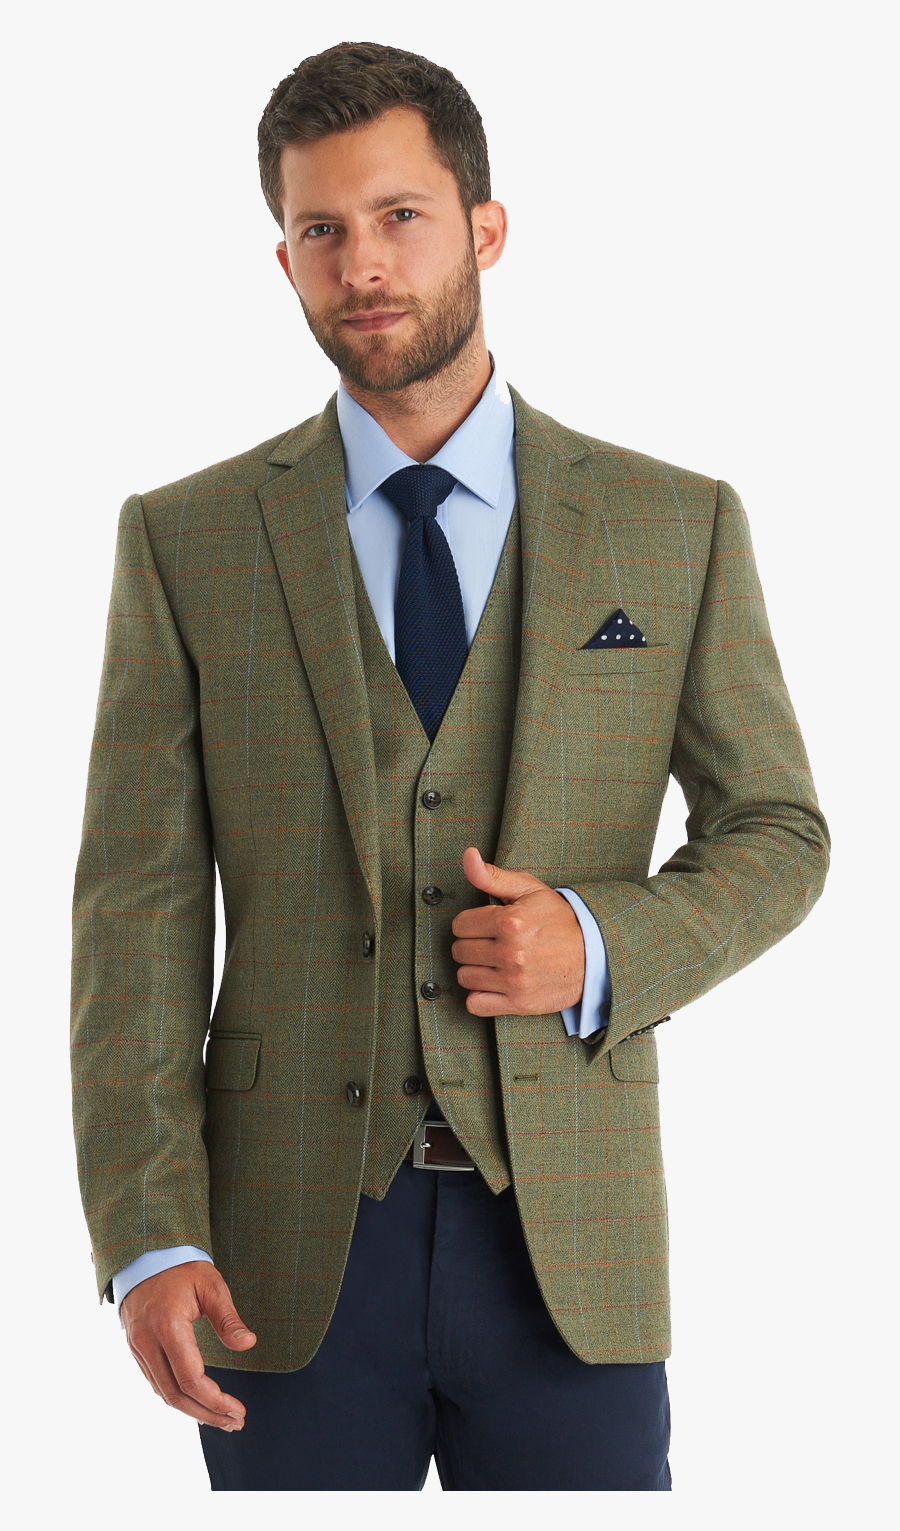 Suit Jacket Png - Formal Wear, Transparent Clipart